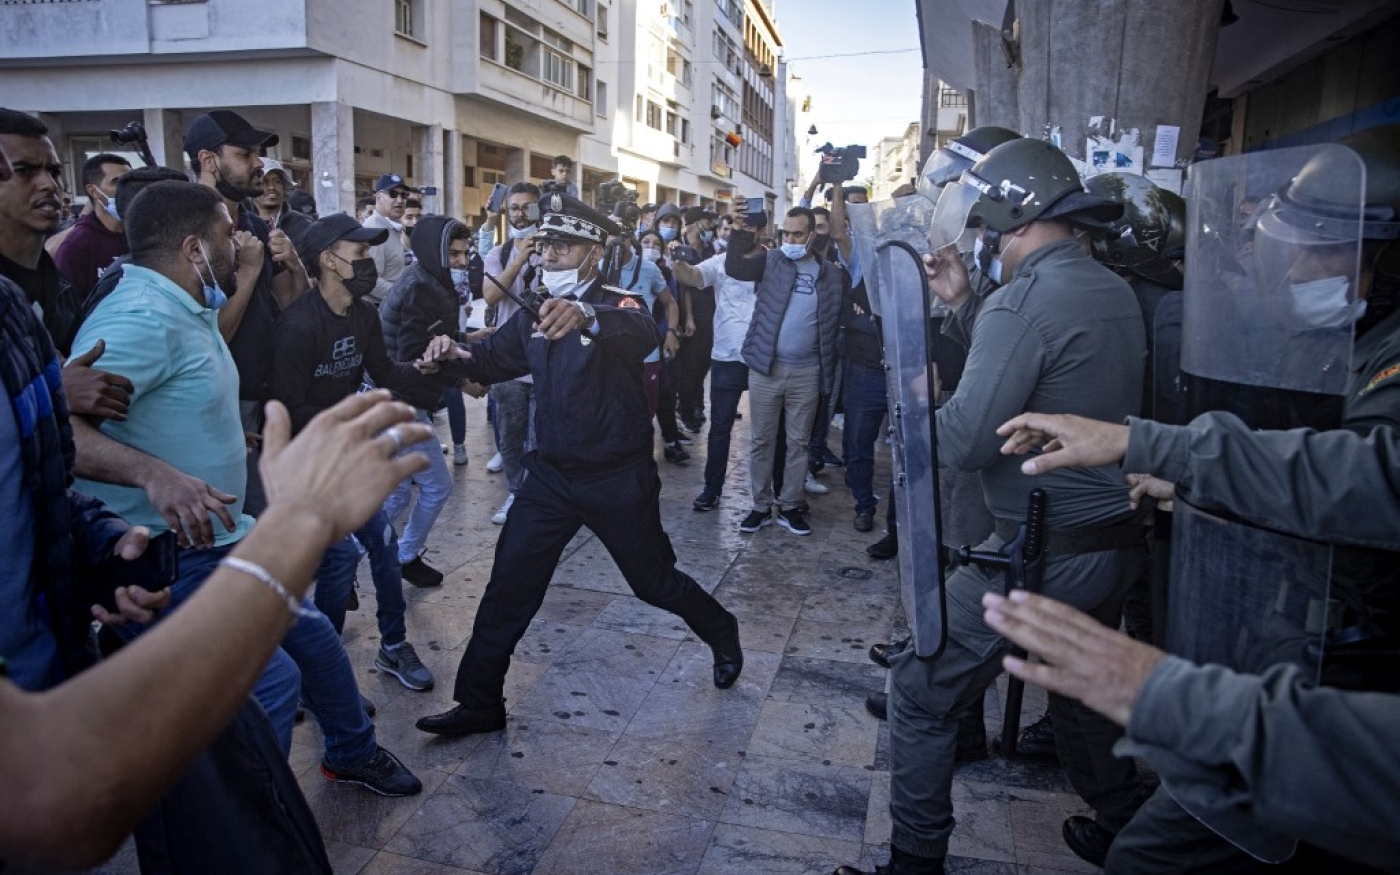 Les forces de sécurité interviennent lors d’une manifestation contre le pass vaccinal, à Rabat, le 31 octobre 2021 (AFP/Fadel Senna)